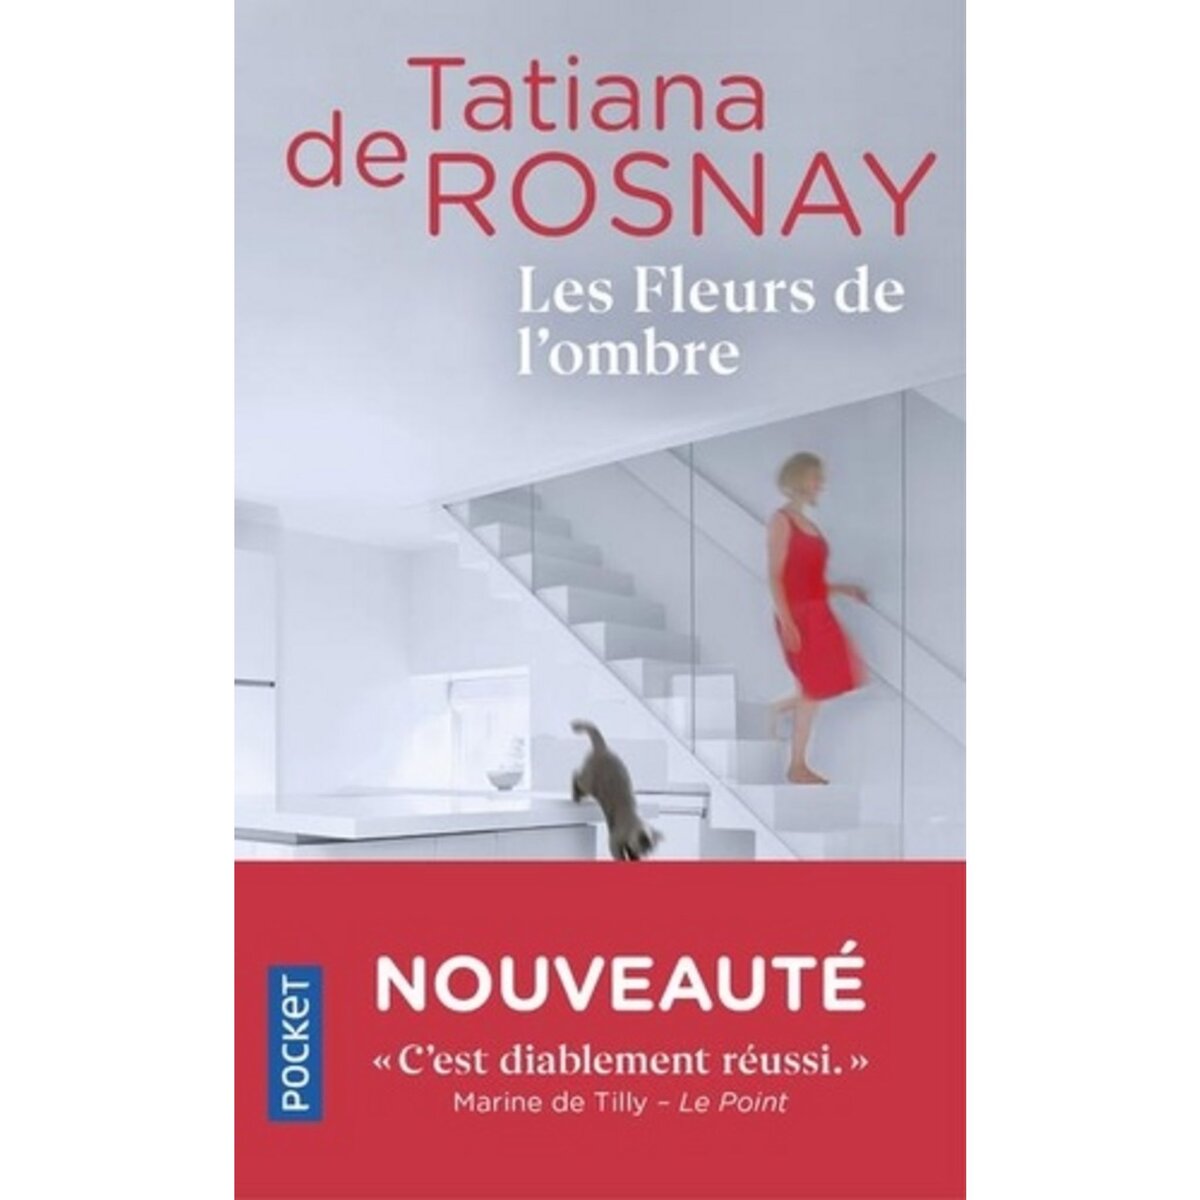  LES FLEURS DE L'OMBRE, Rosnay Tatiana de